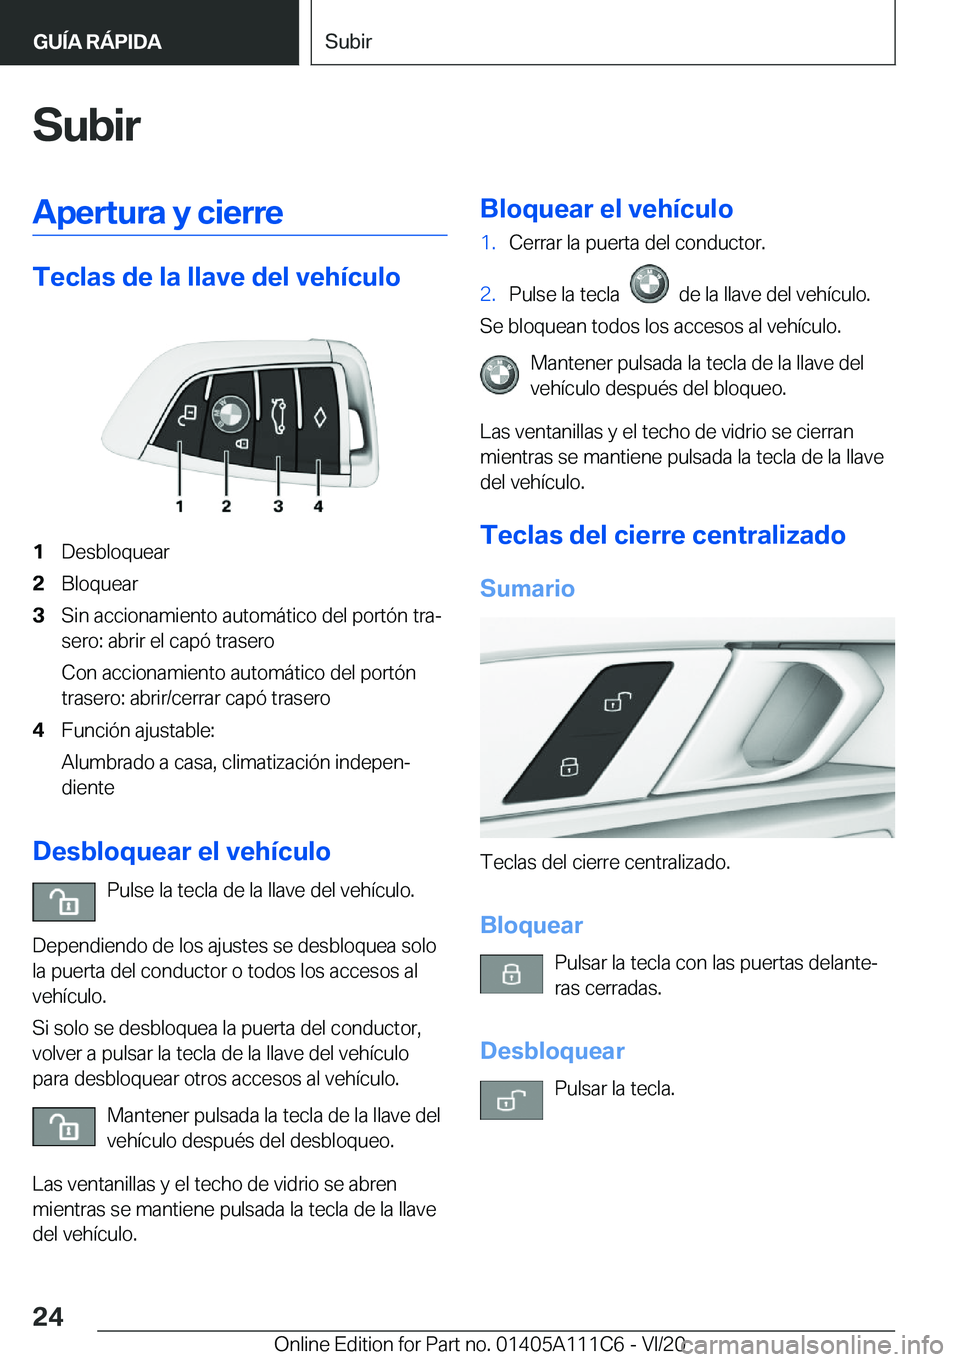 BMW 3 SERIES SEDAN PLUG-IN HYBRID 2021  Manuales de Empleo (in Spanish) �S�u�b�i�r�A�p�e�r�t�u�r�a��y��c�i�e�r�r�e
�T�e�c�l�a�s��d�e��l�a��l�l�a�v�e��d�e�l��v�e�h�